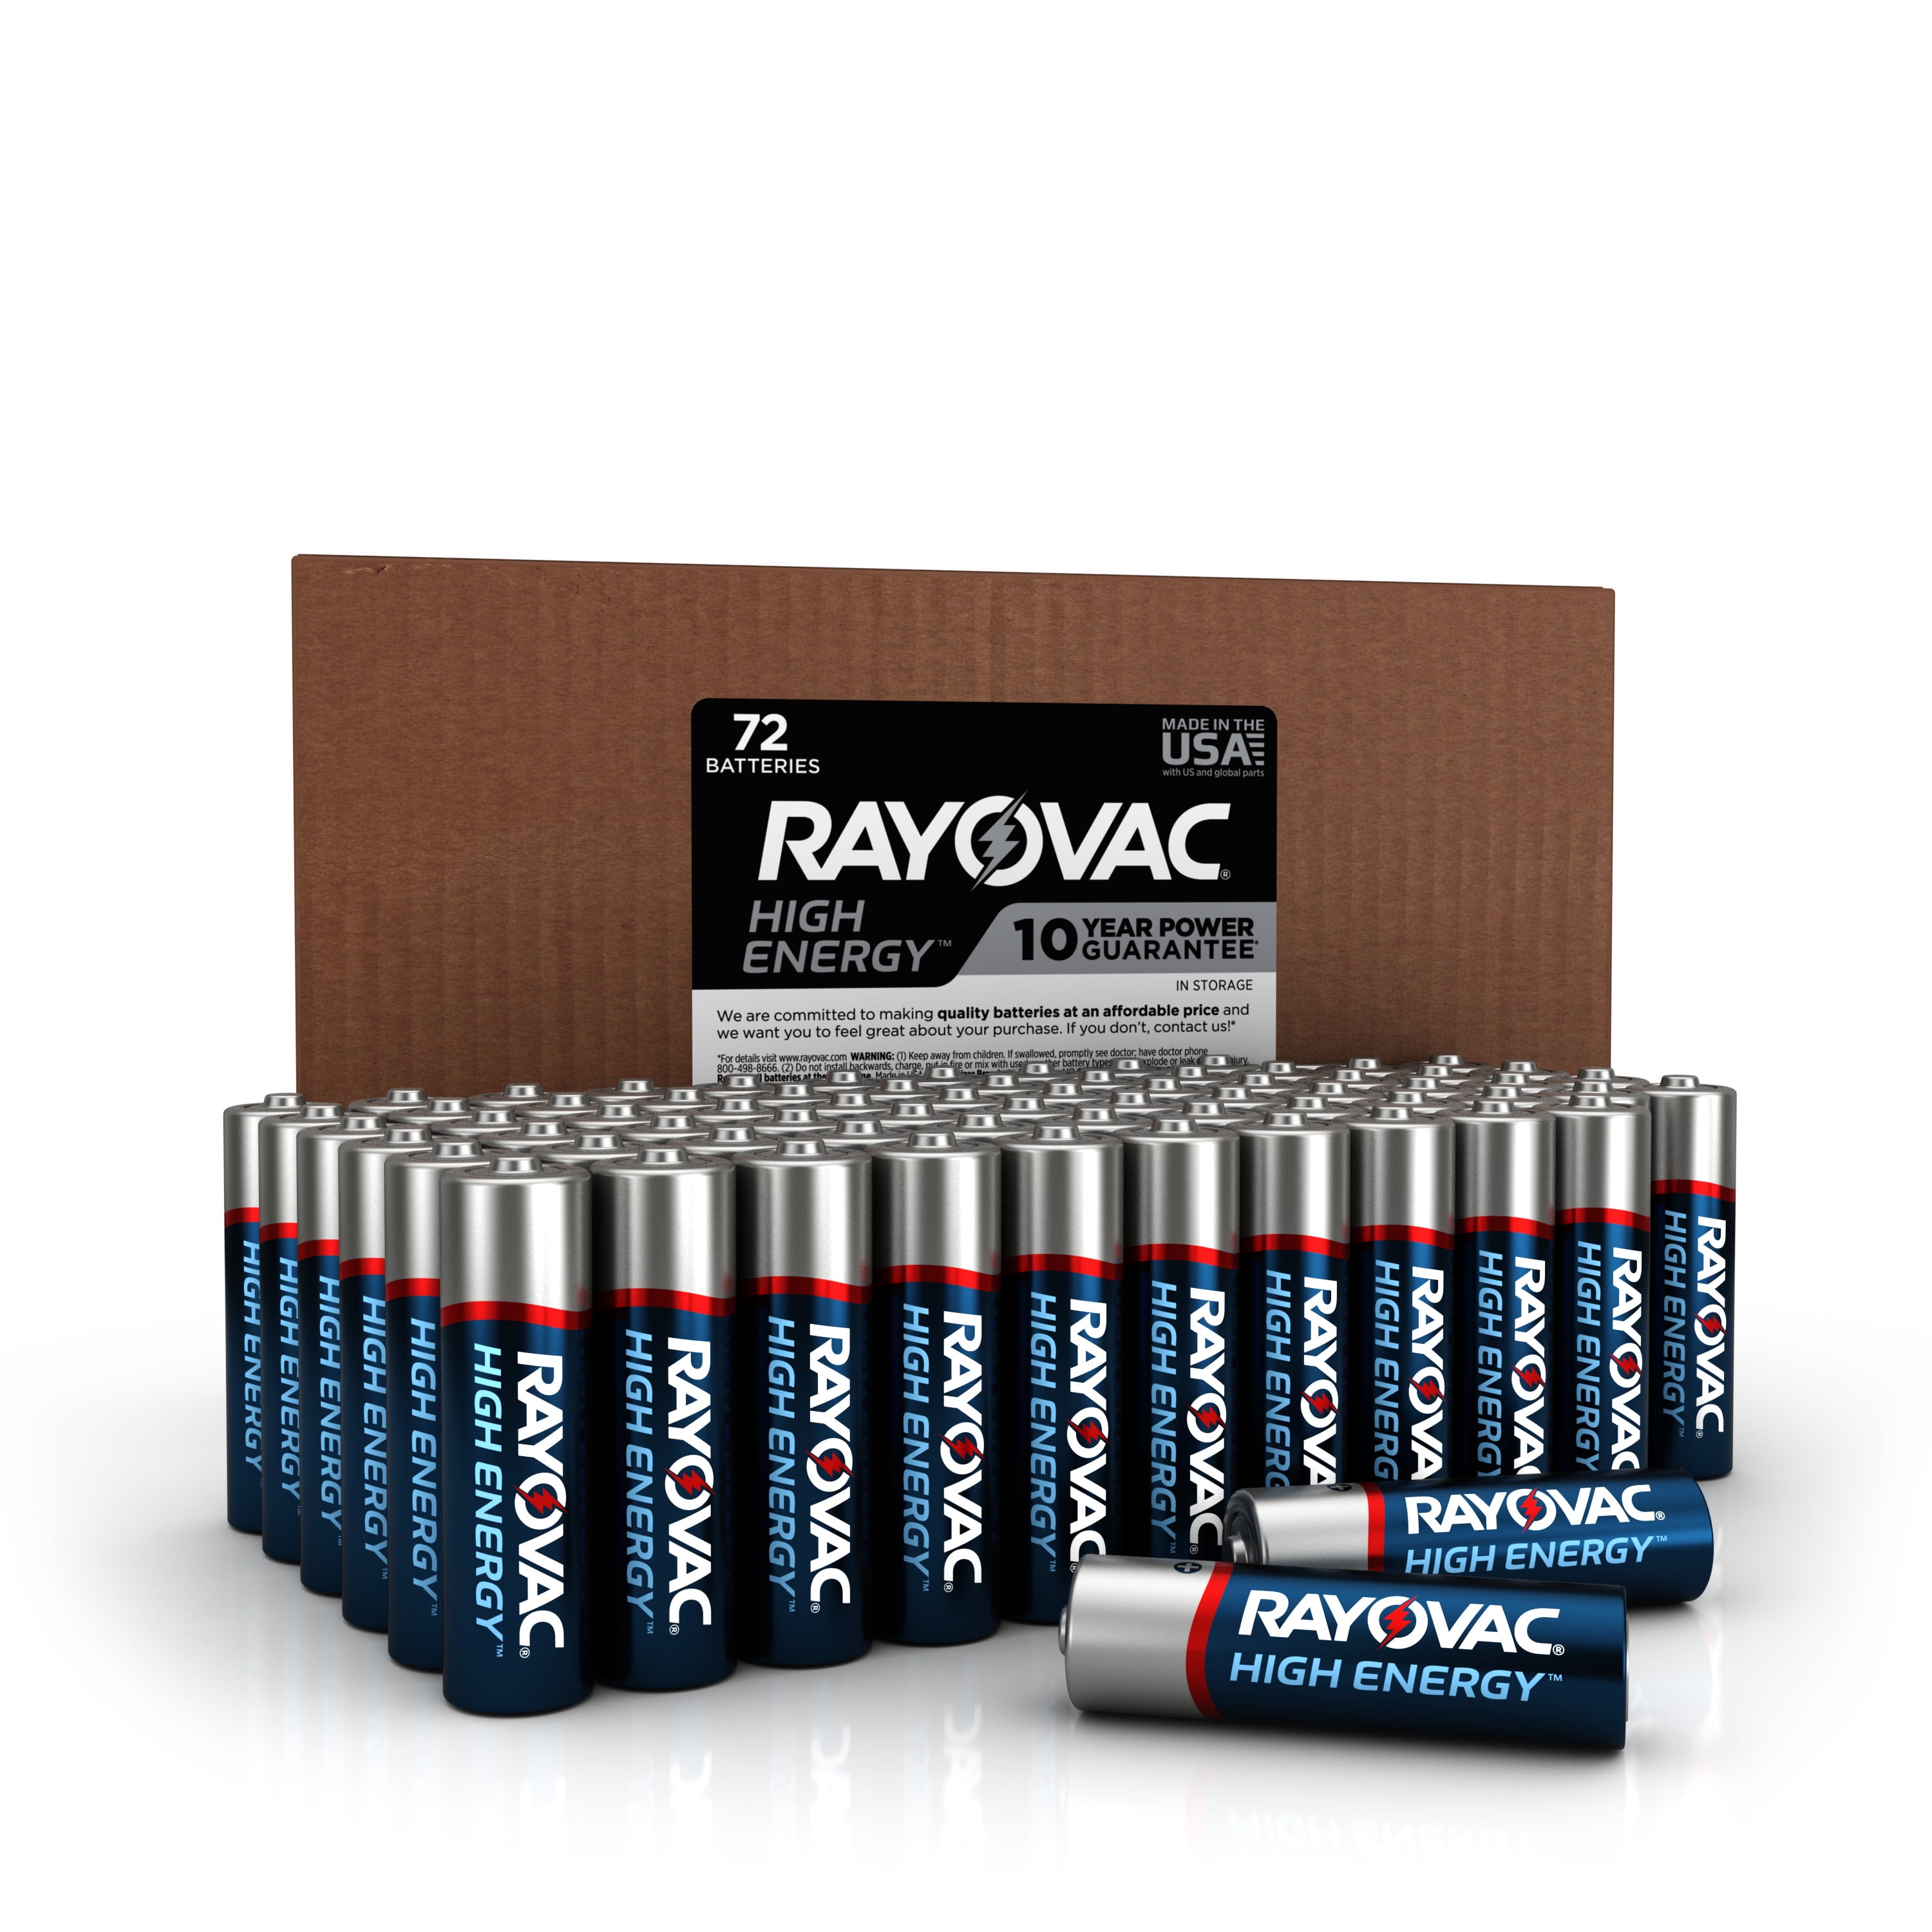 AAA HIGH ENERGY™ Alkaline Batteries - Rayovac